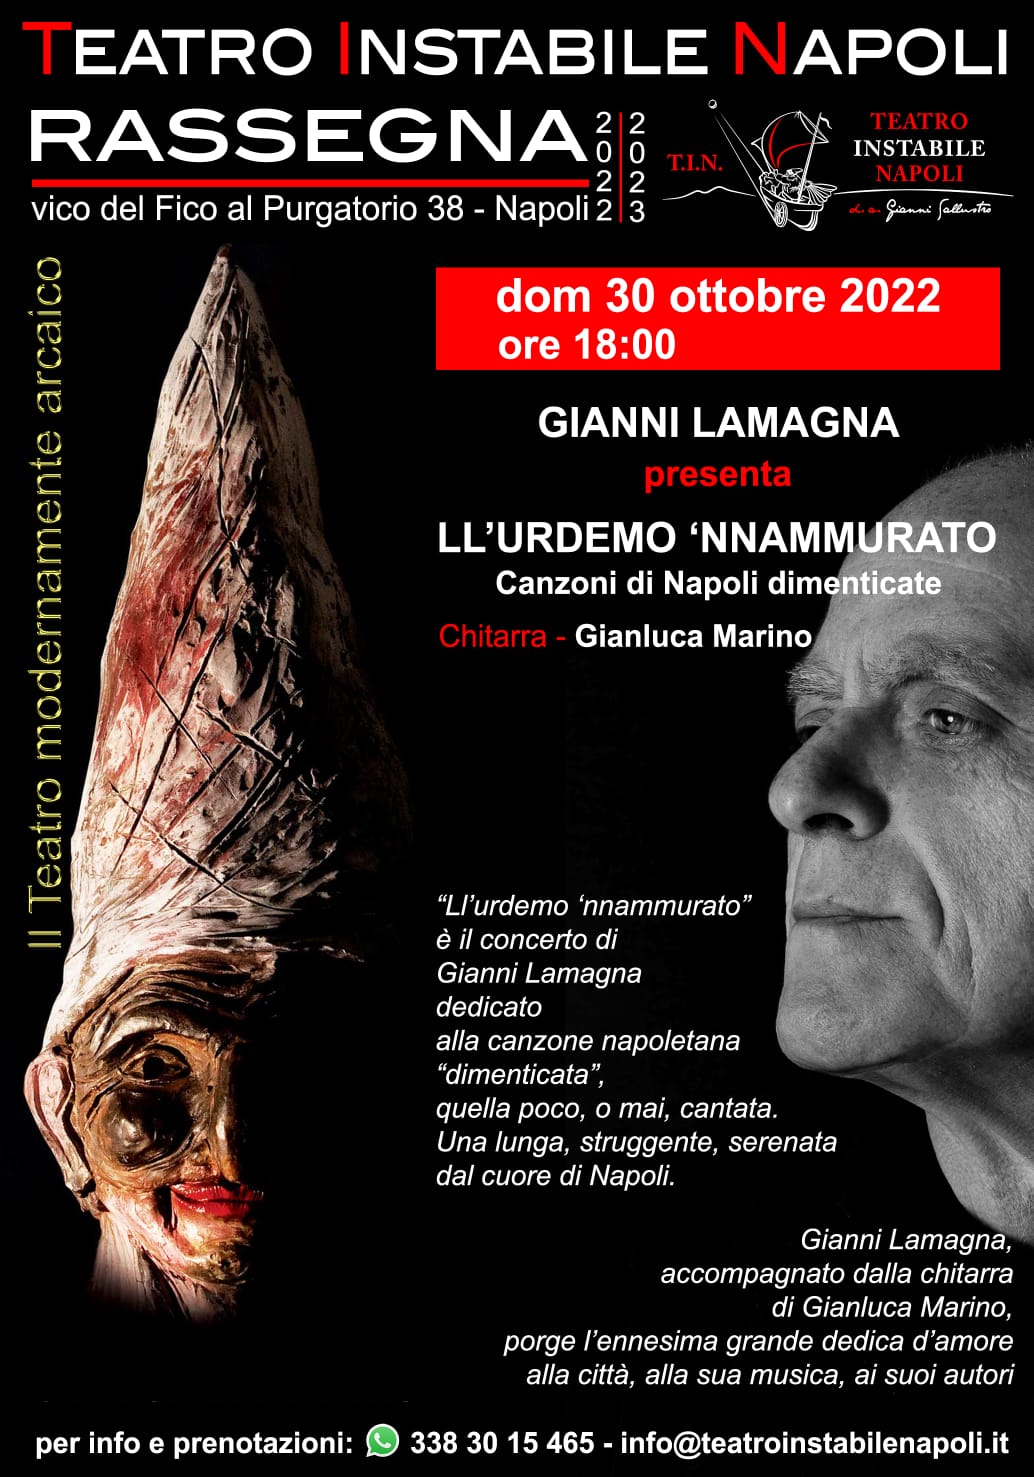 TEATRO INSTABILE NAPOLI DOMENICA 30 OTTOBRE ORE 18.00 Gianni Lamagna in Ll’urdemo ‘nnammurato Canzoni di Napoli dimenticate